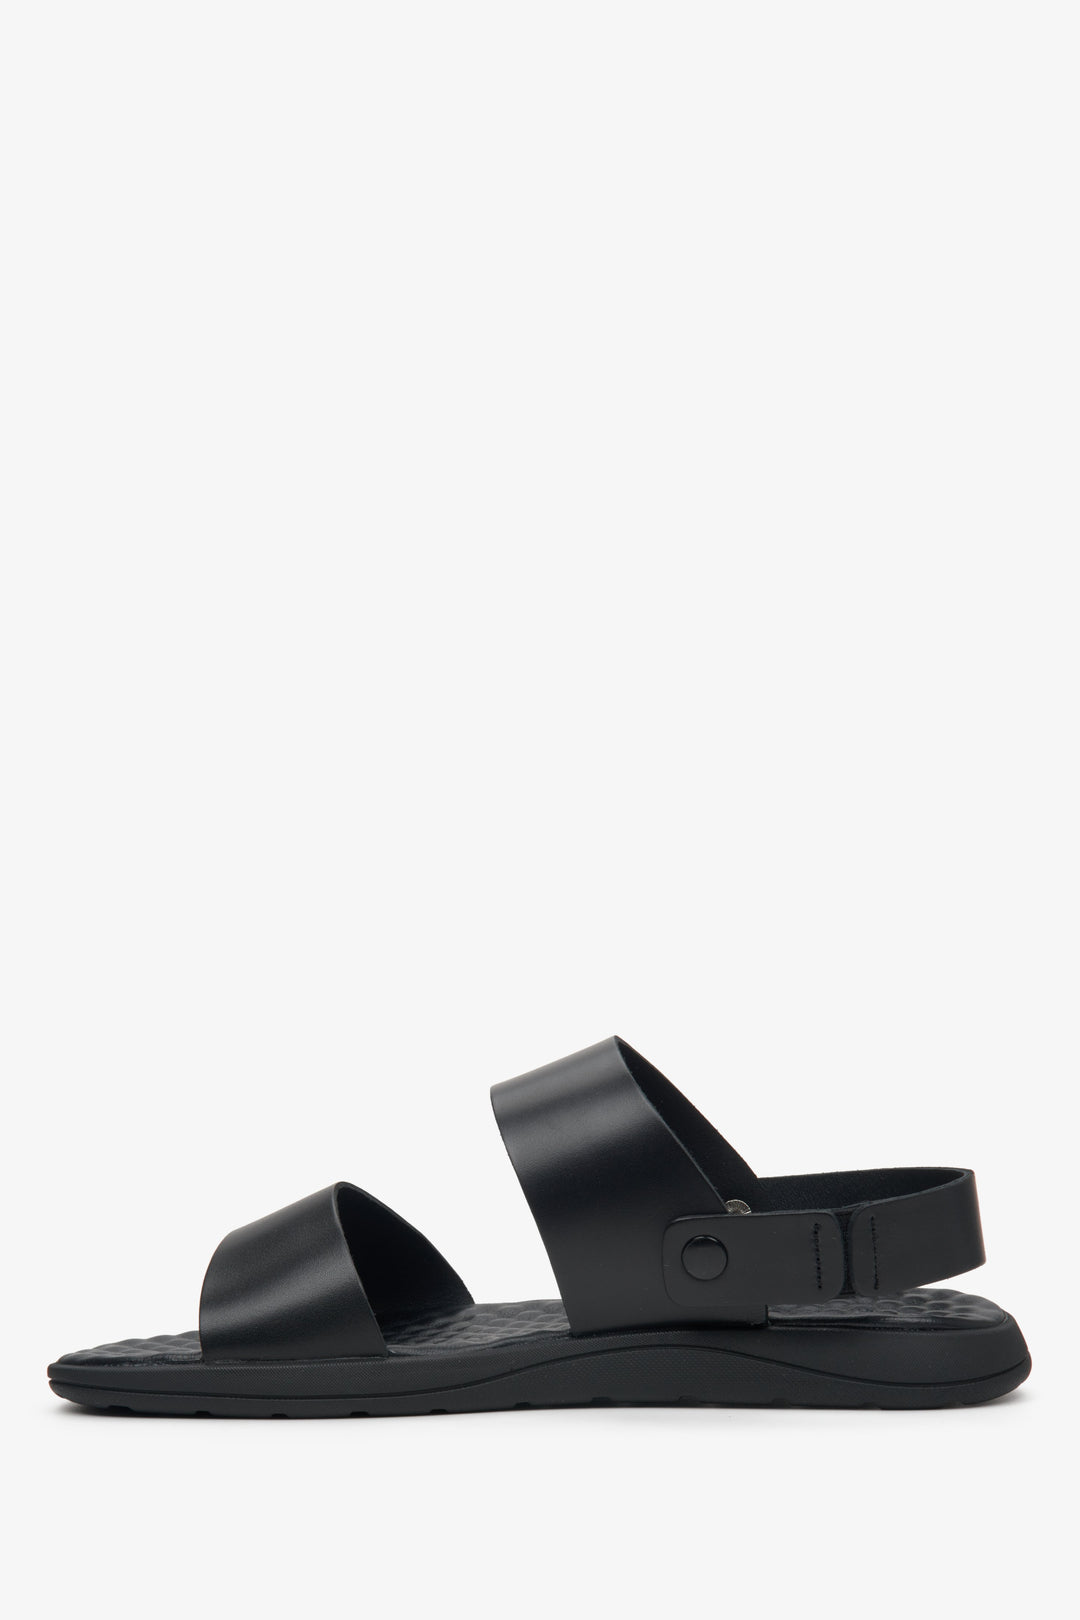 Leather, men's black sandals by Estro - profile.